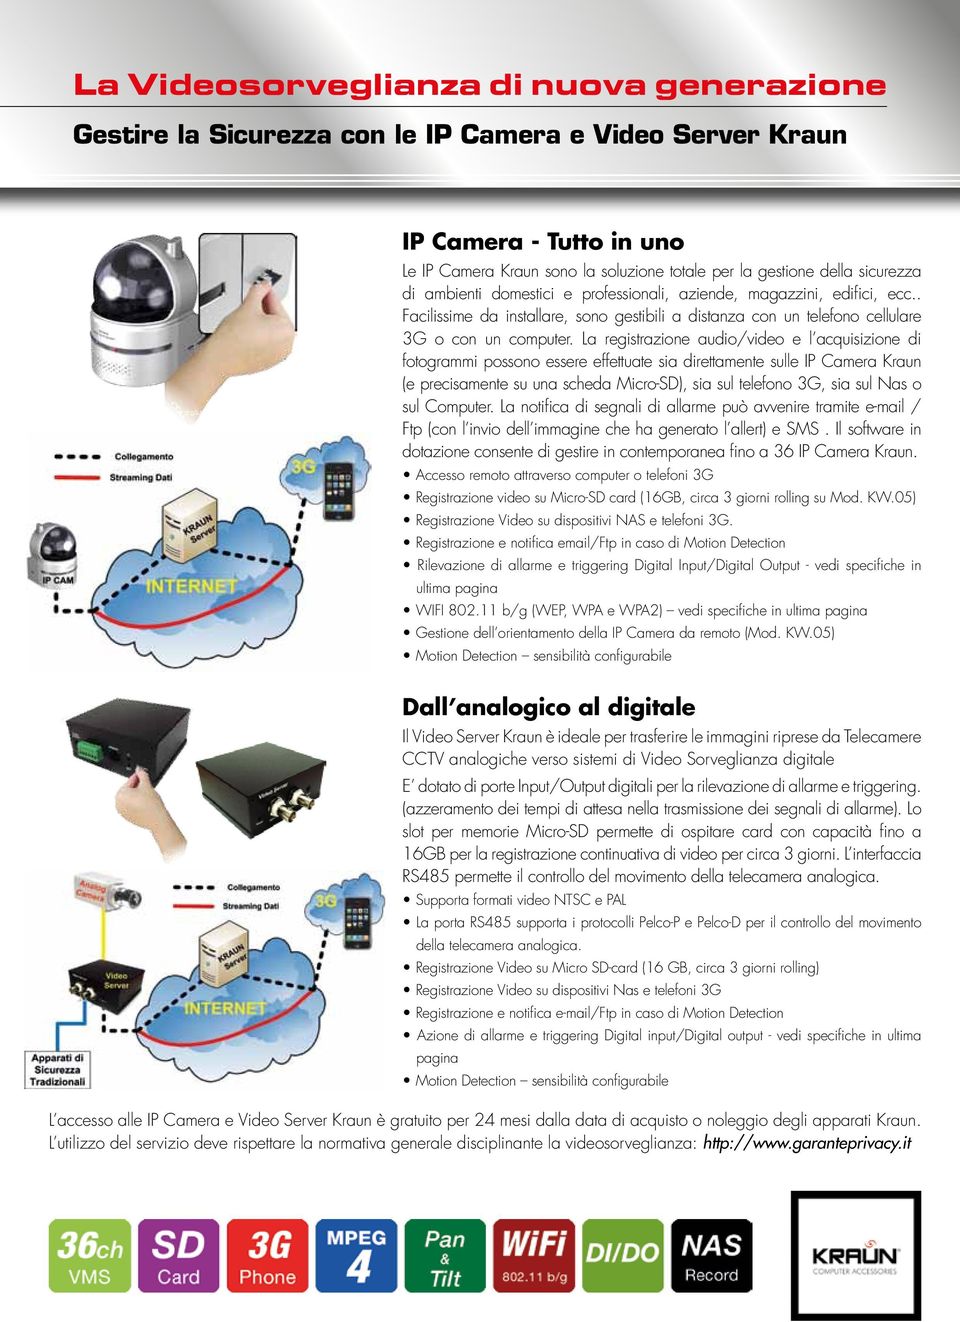 La registrazione audio/video e l acquisizione di fotogrammi possono essere effettuate sia direttamente sulle (e precisamente su una scheda Micro-SD), sia sul telefono 3G, sia sul Nas o sul Computer.